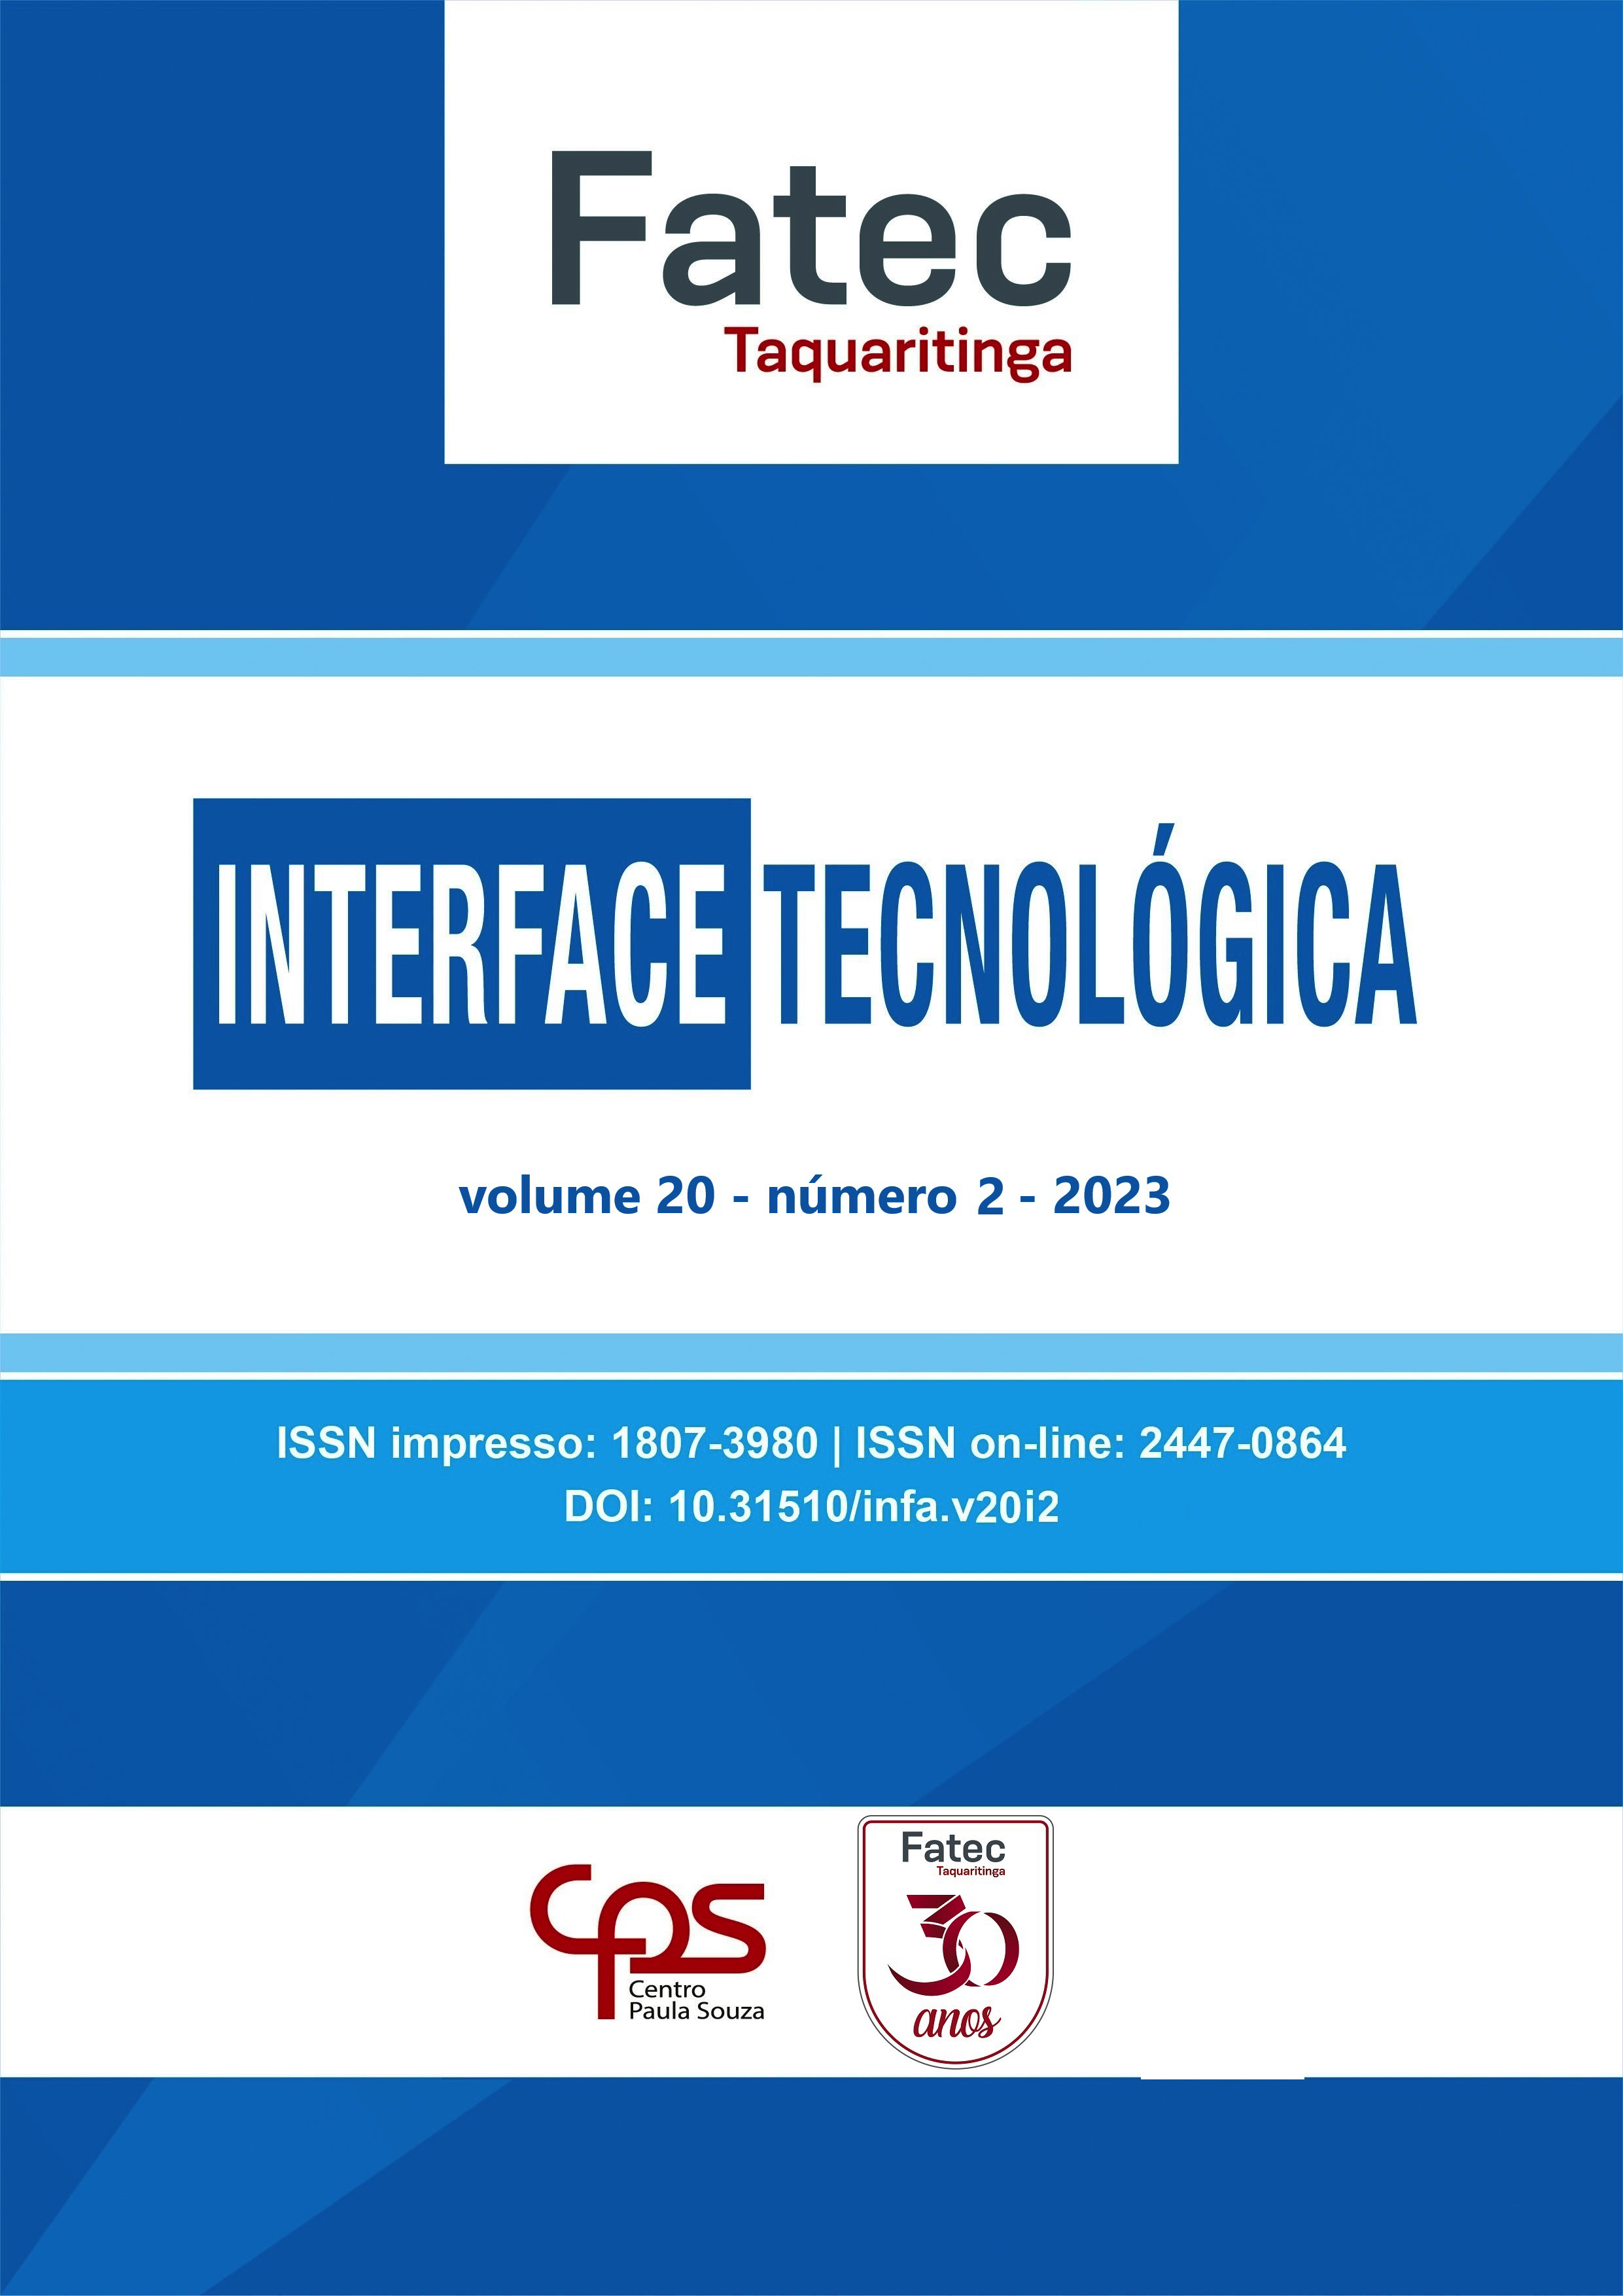 					Visualizar v. 20 n. 2 (2023): Revista Interface Tecnológica
				